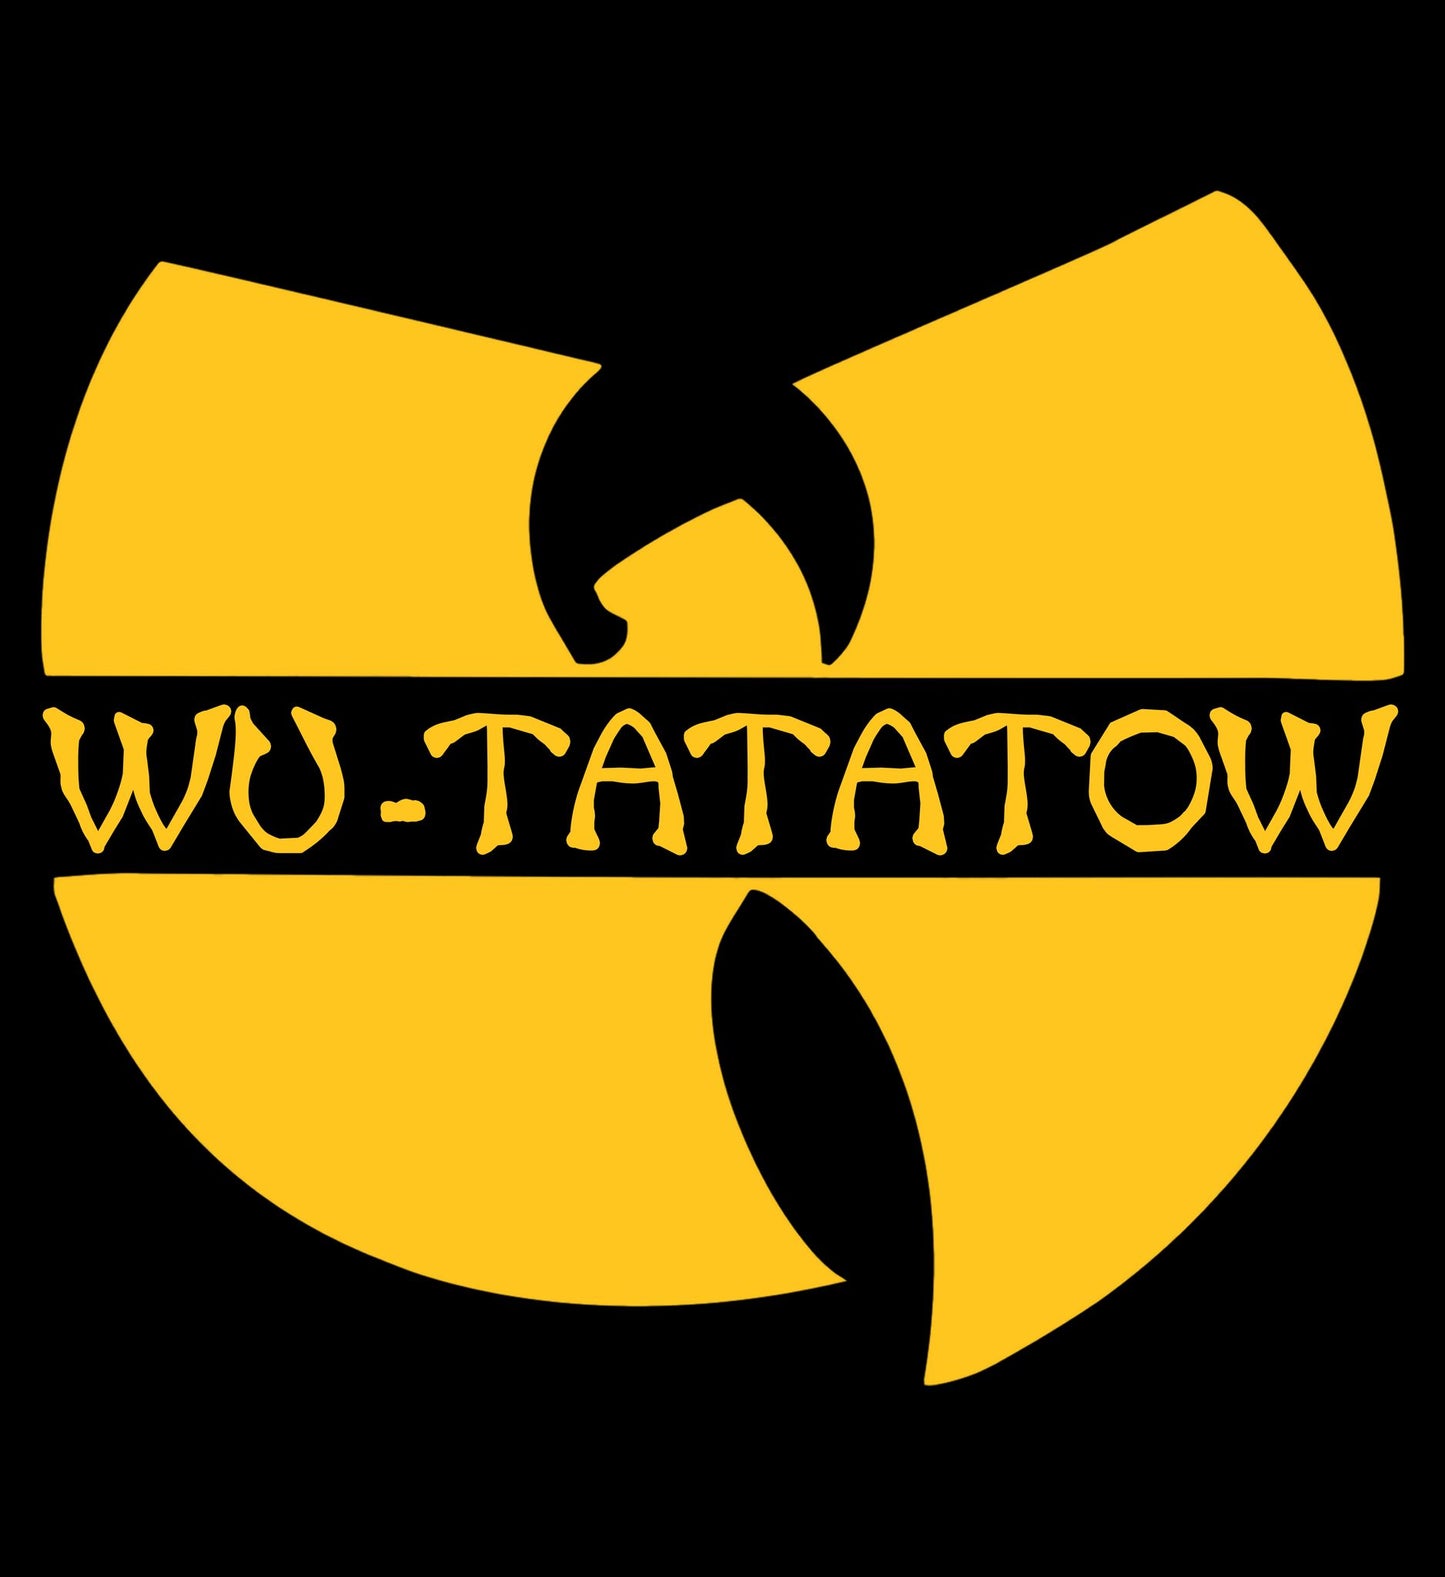 Wu-tatatow